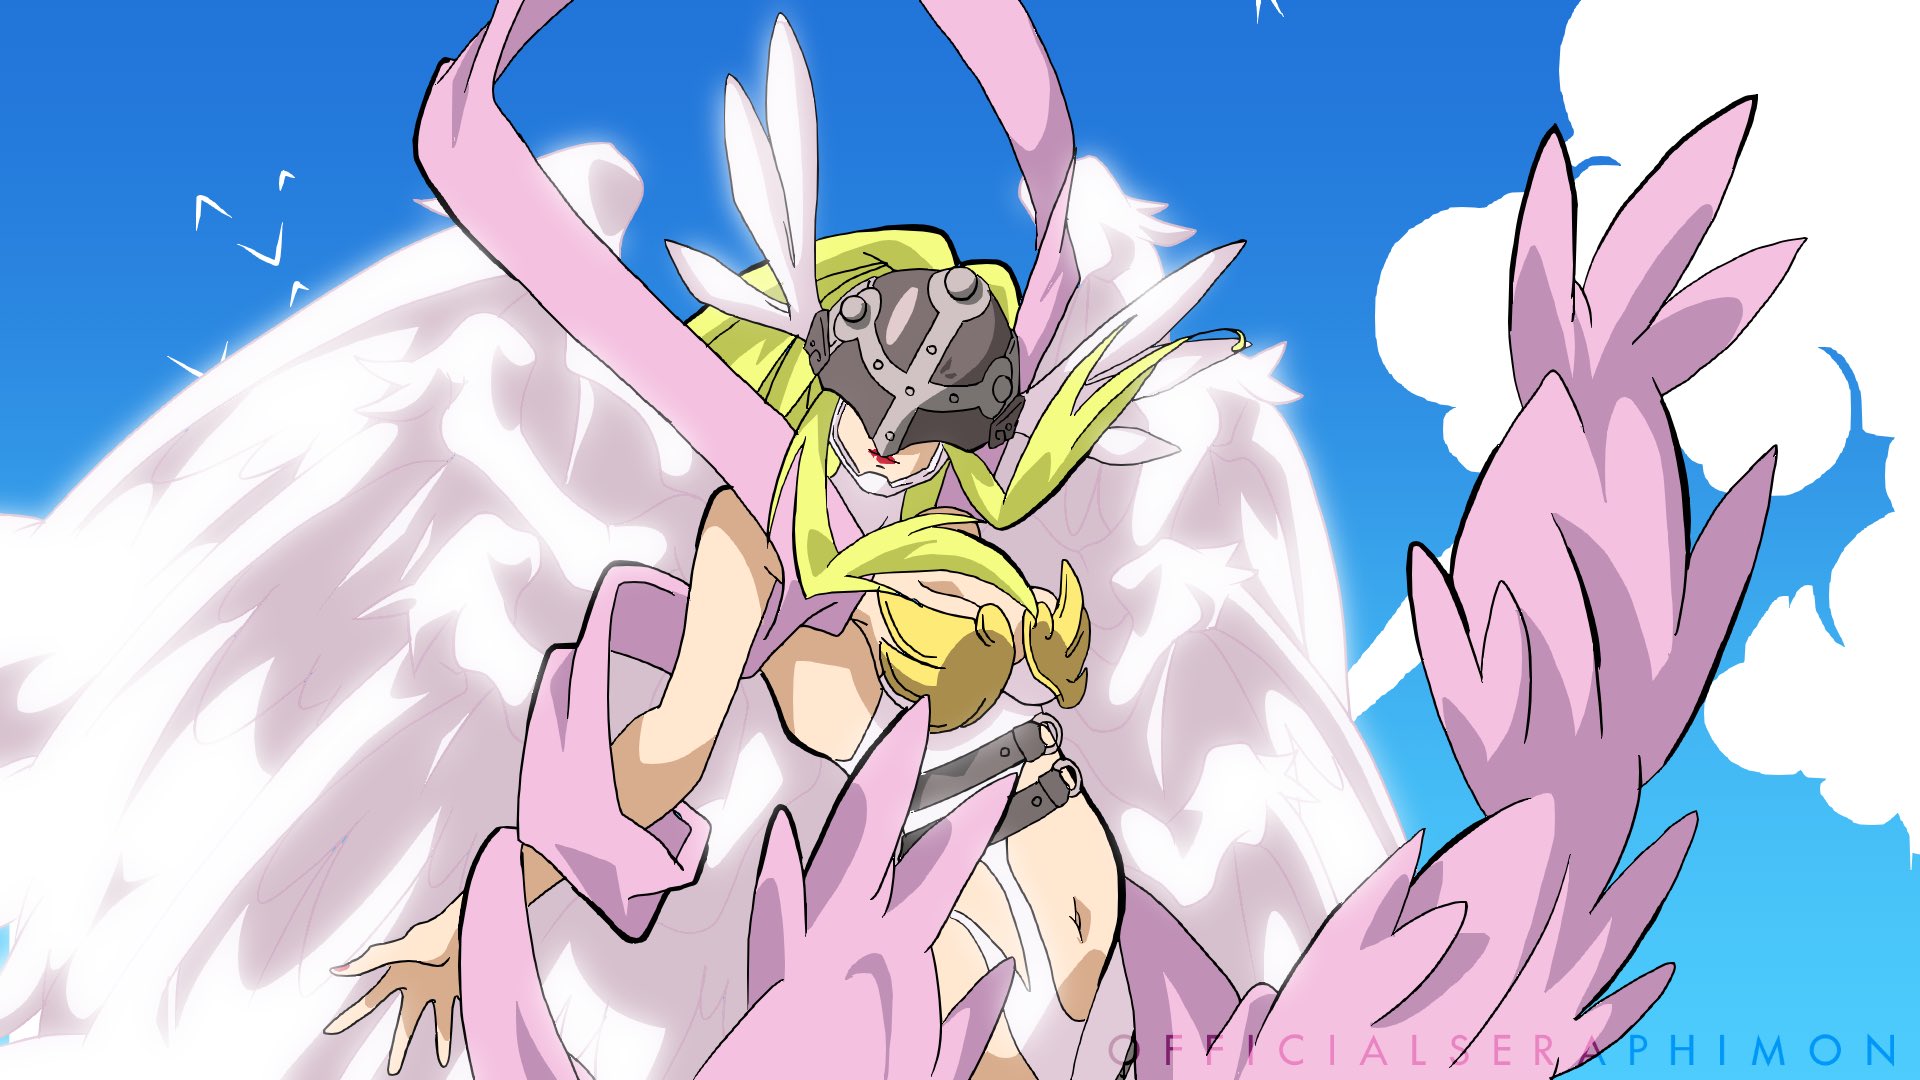 Seraphi COMMISSIONS OPEN on X:  ▪︎ Digimon Adventure Tri. 2